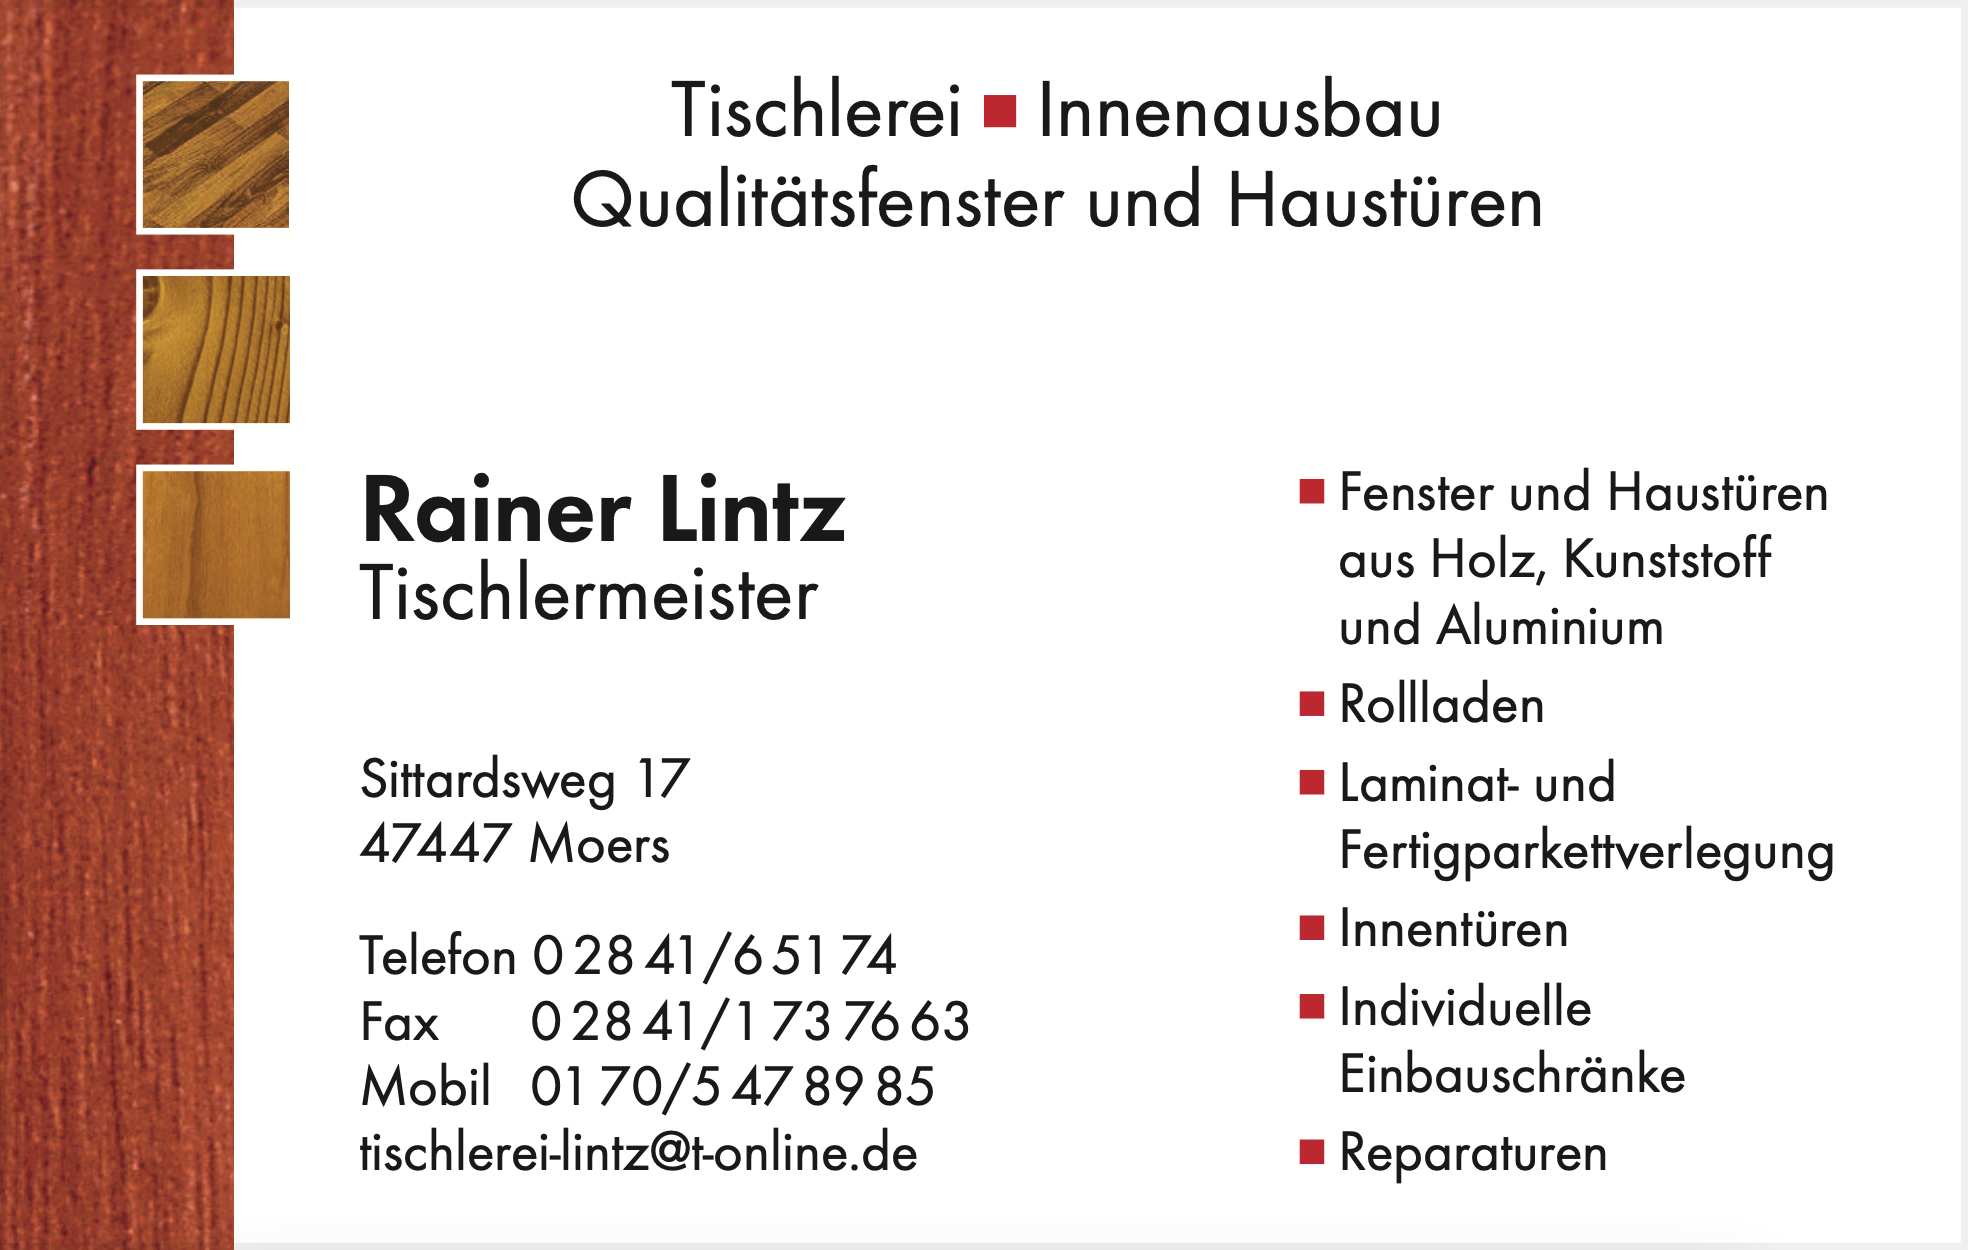 Rainer Lintz - Tischlermeister